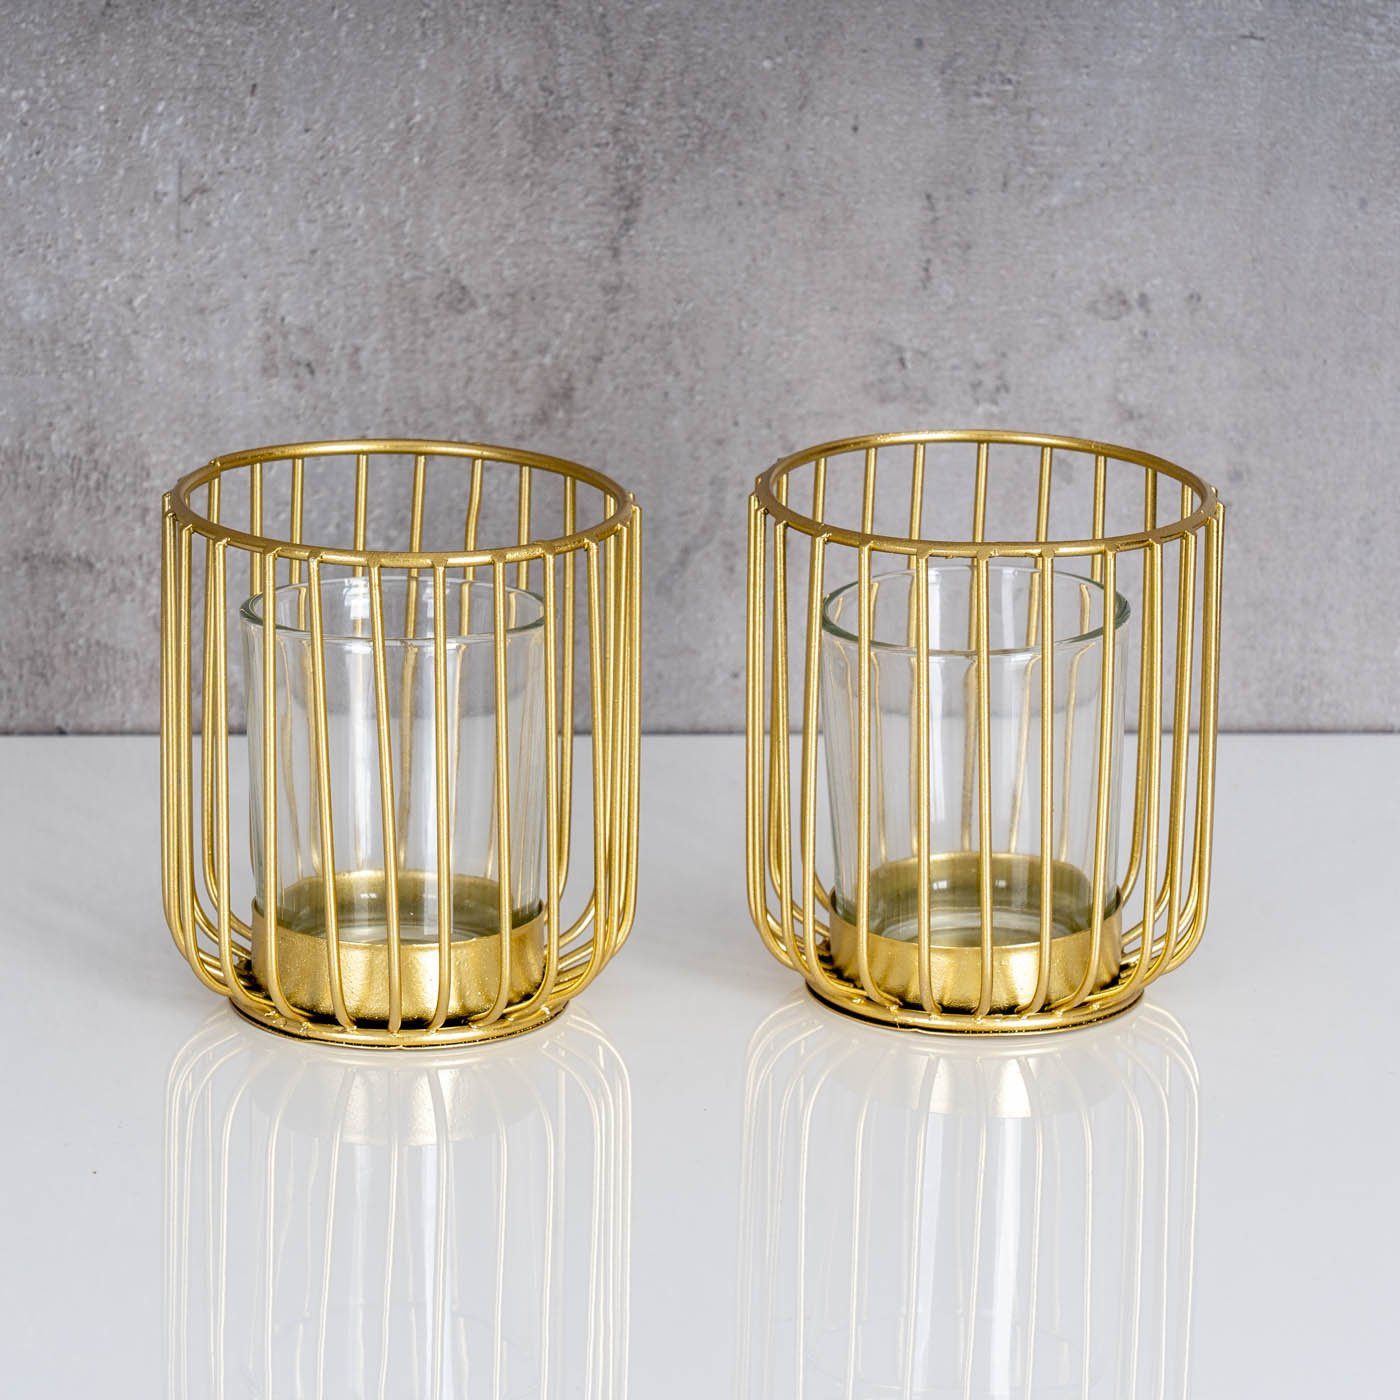 Levandeo® Teelichthalter, Teelichthalter Set Kerzenhalter Windlicht Metall 2er Gold Glas